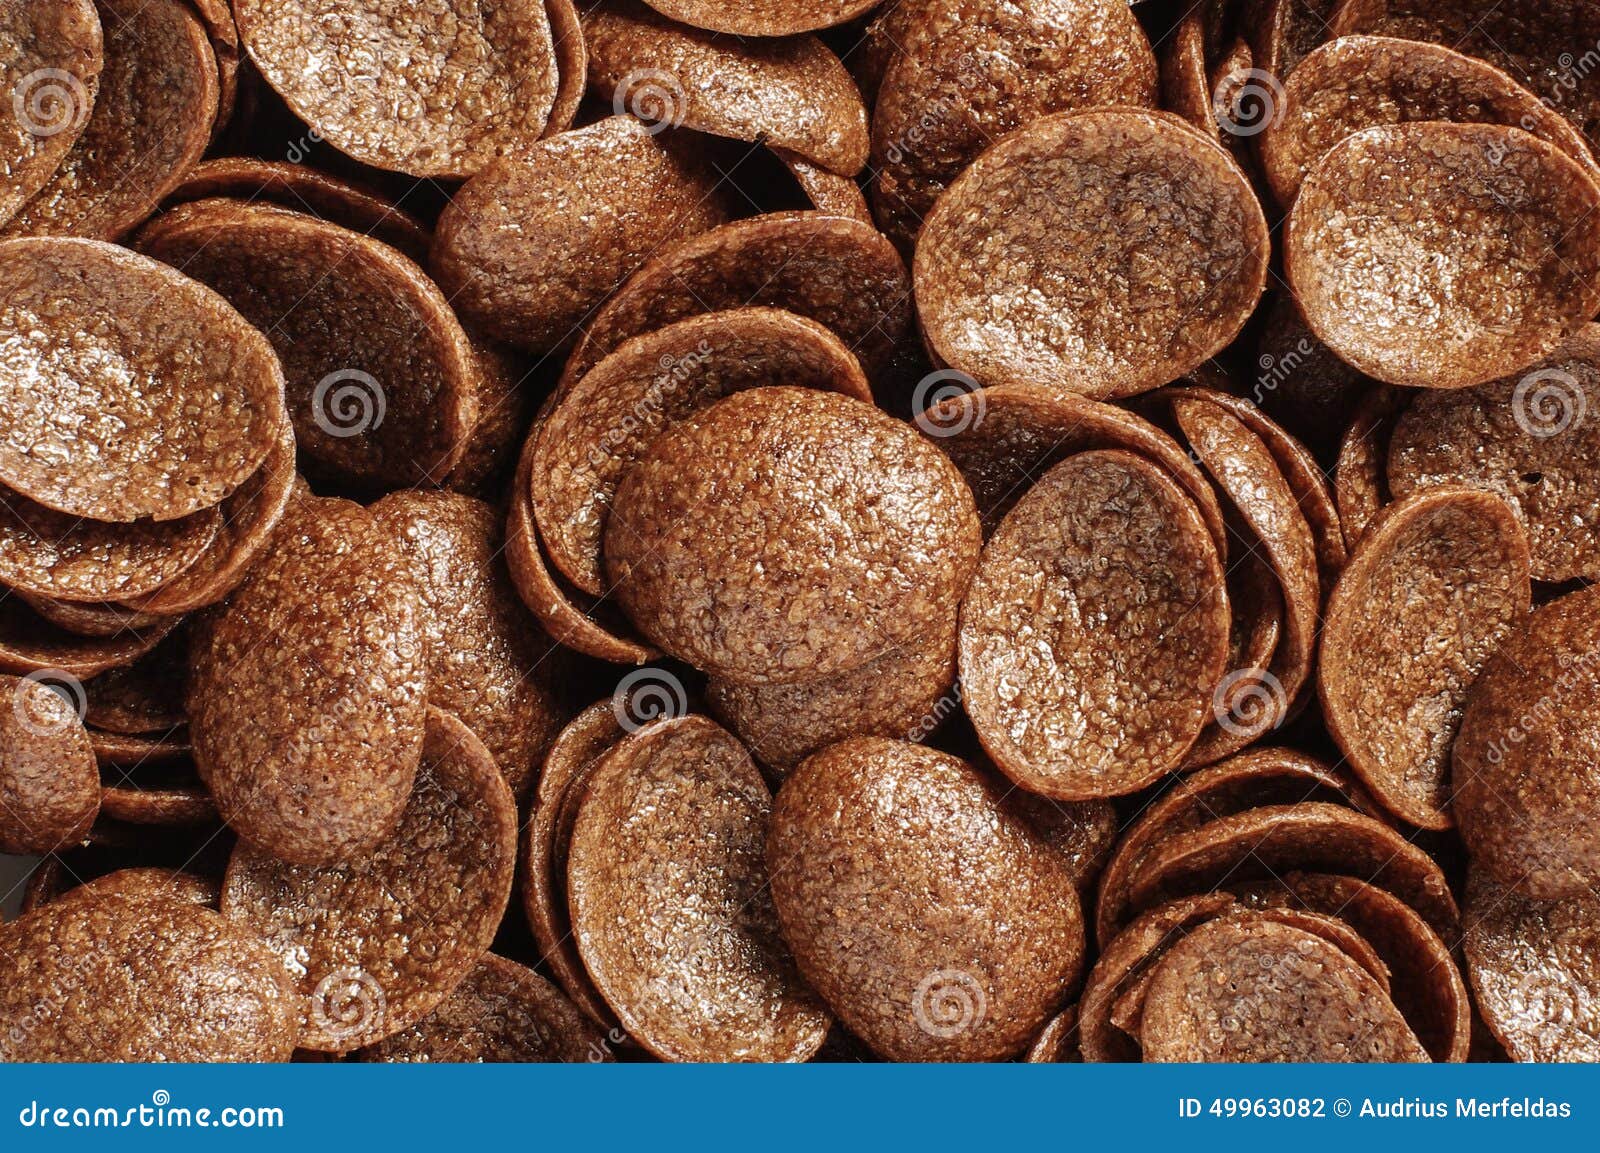 Kokos Cornflakes Kekse — Rezepte Suchen